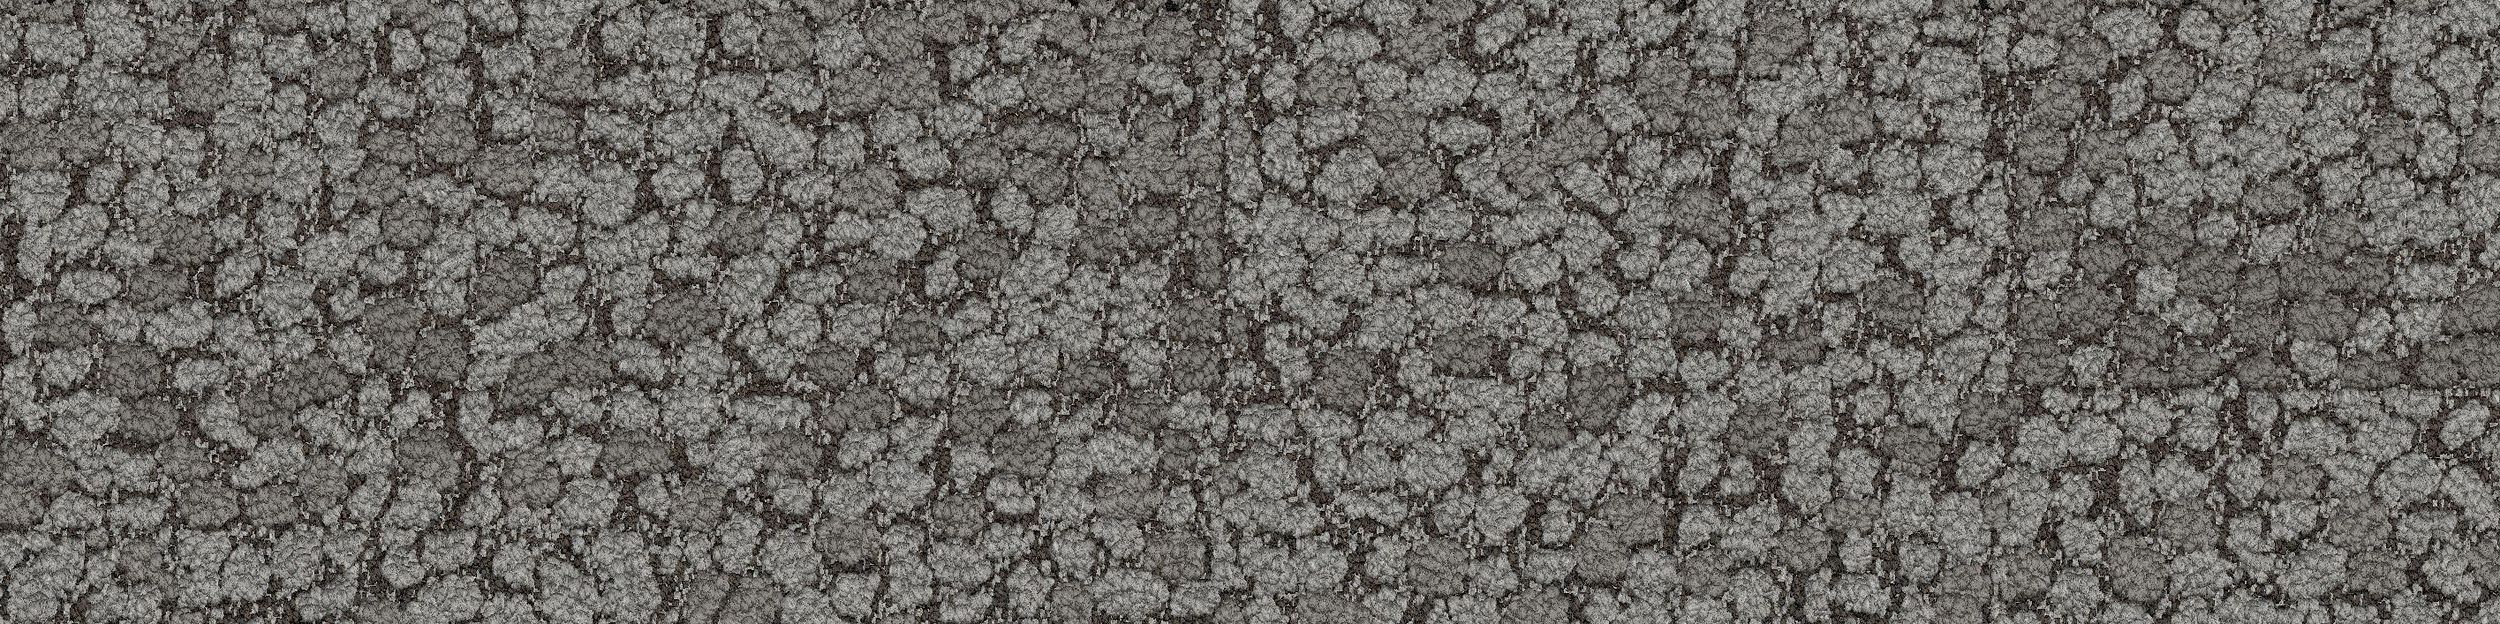 HN840 Carpet Tile In Nickel numéro d’image 2